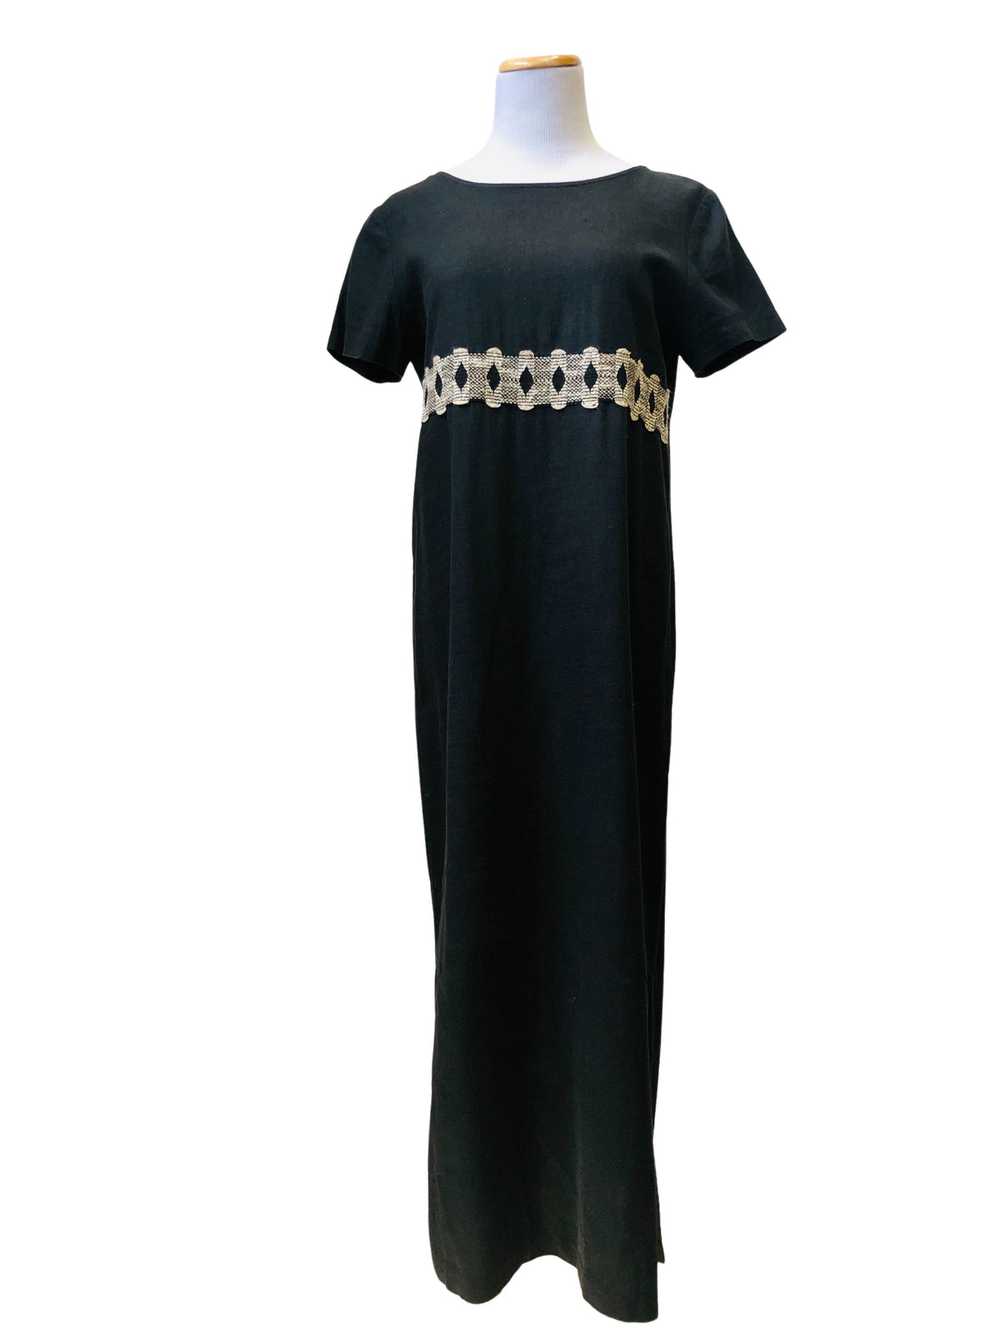 Vintage Black Linen Long Shift Dress - image 4